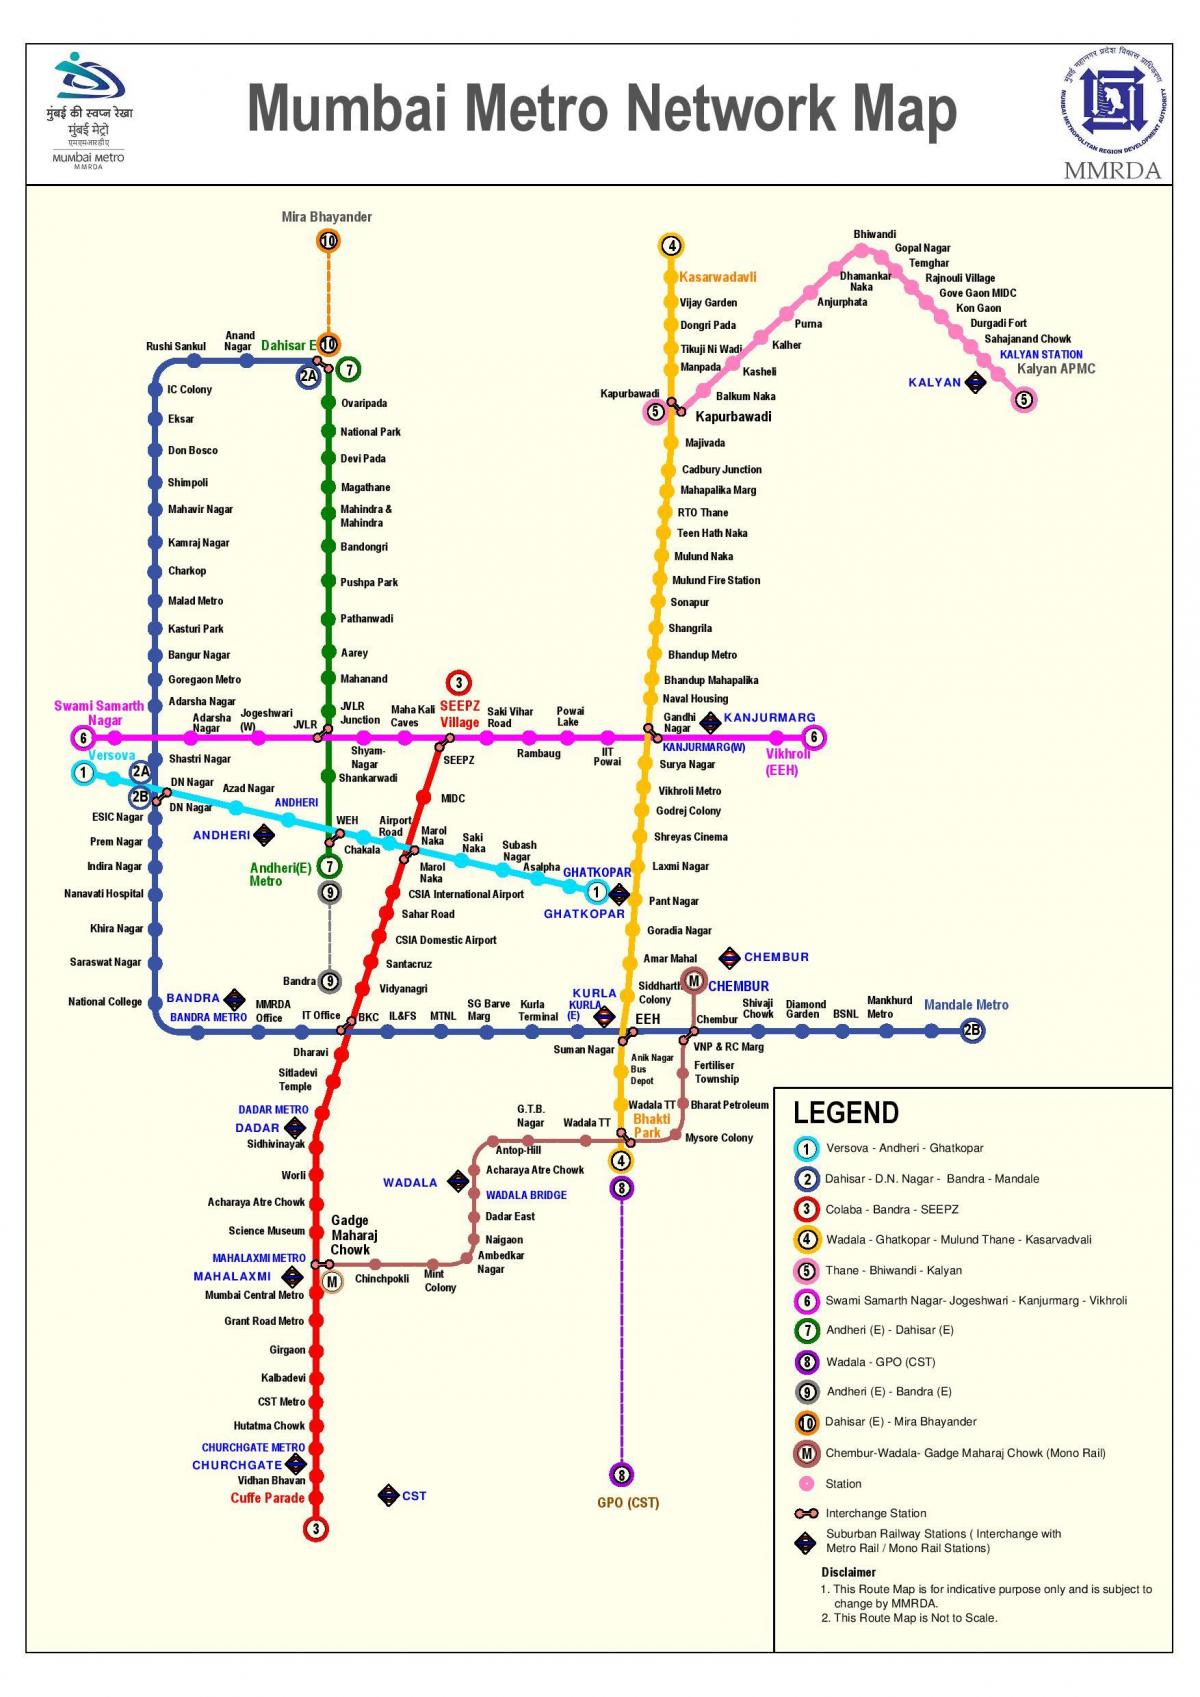 મુંબઇ મેટ્રો સ્ટેશન નકશો